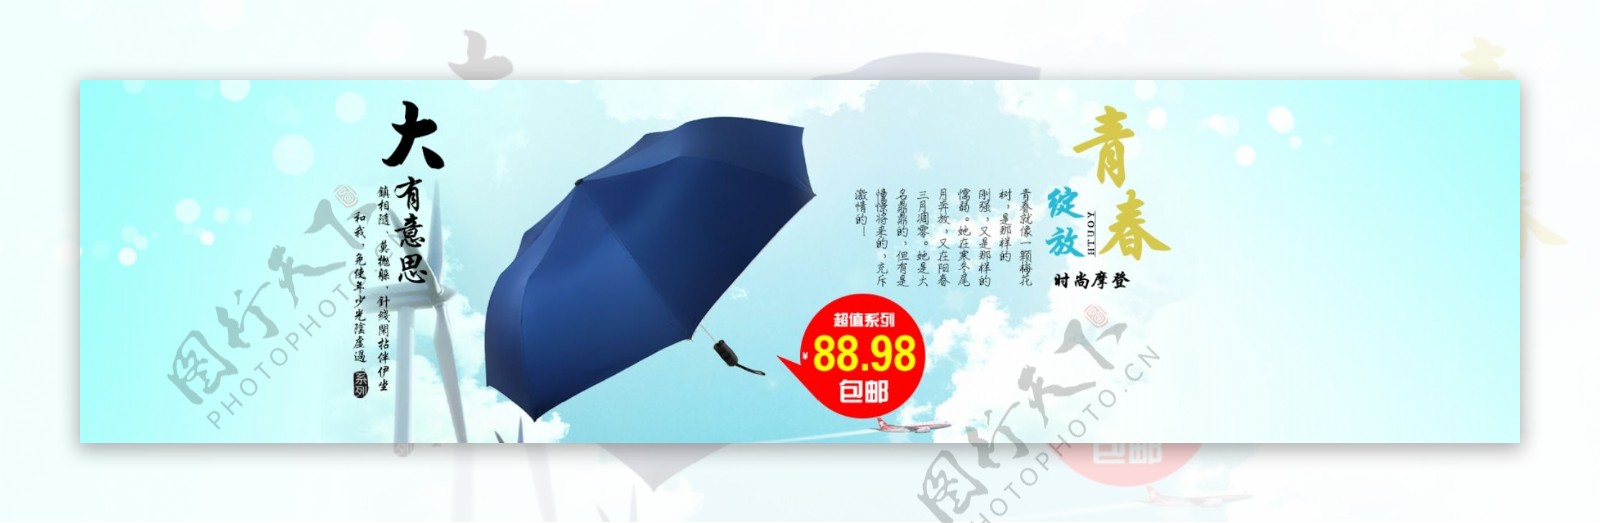 时尚摩登雨伞